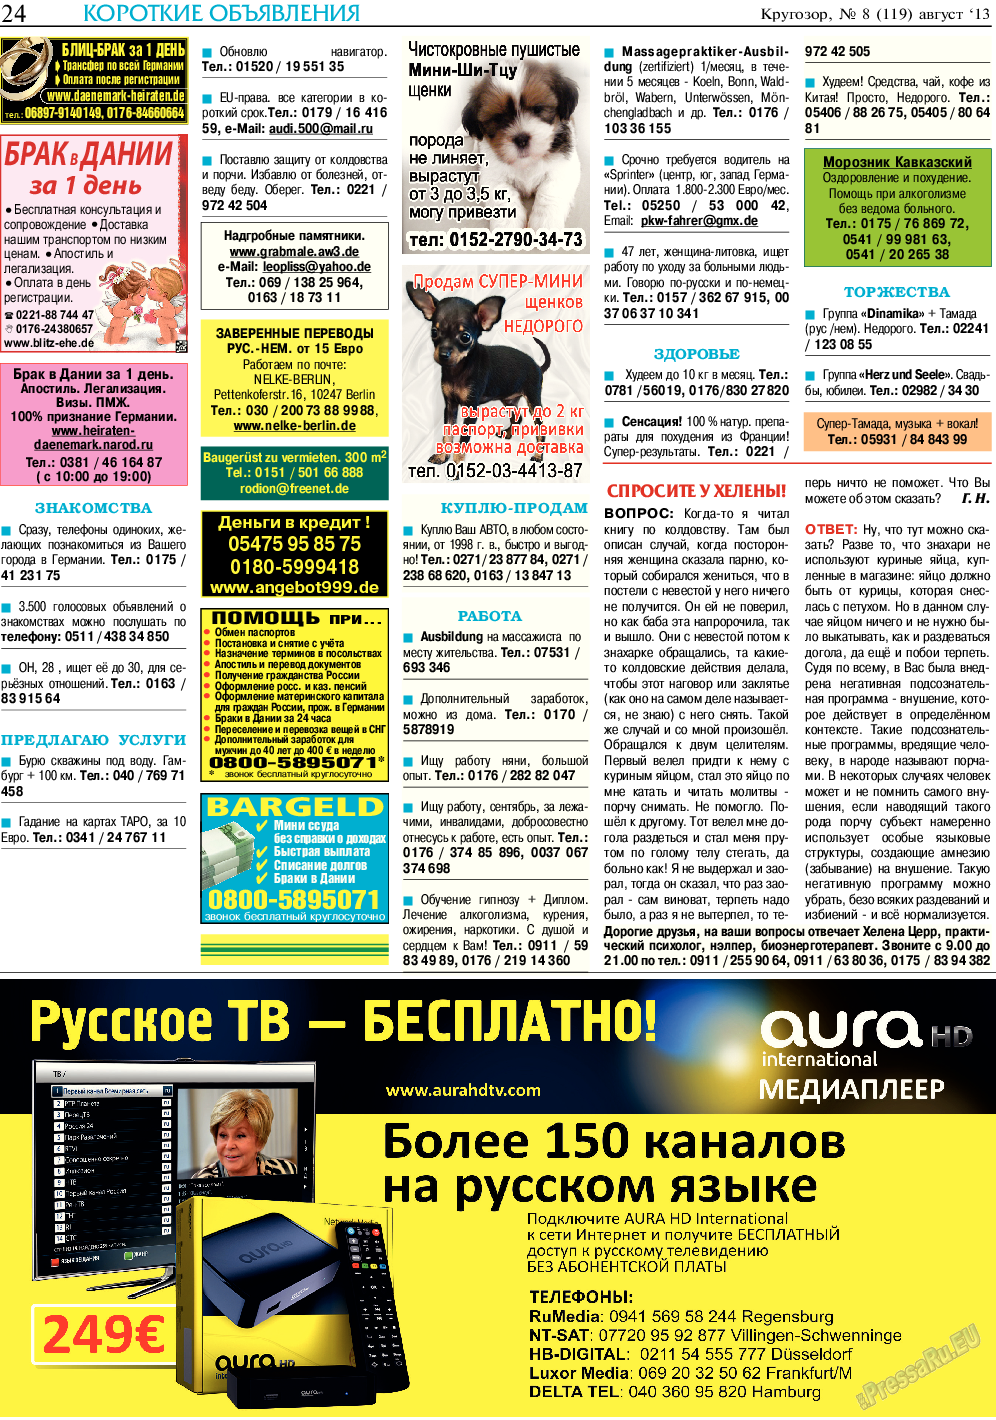 Кругозор, газета. 2013 №8 стр.24